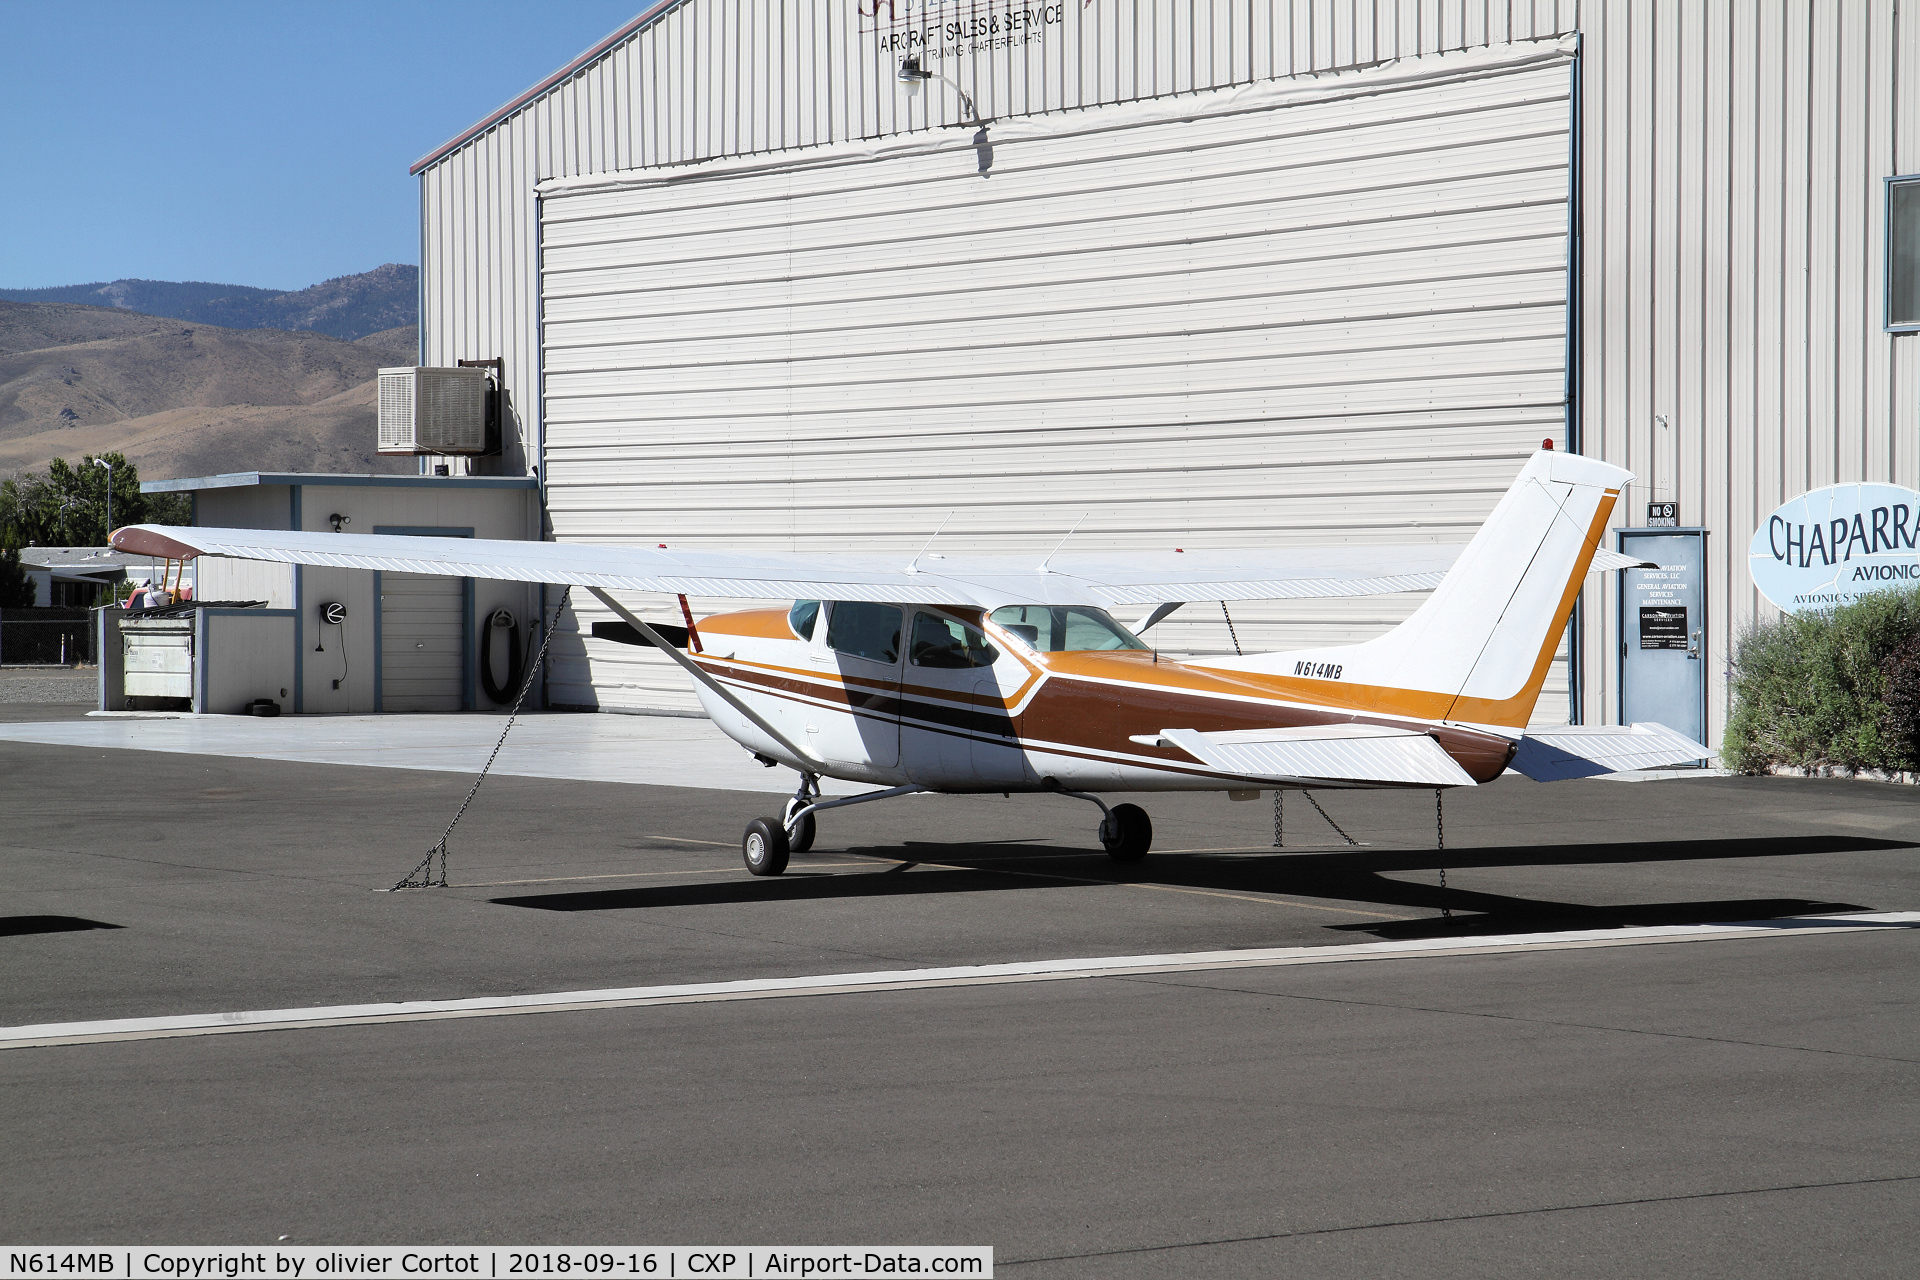 N614MB, 1978 Cessna R182 Skylane RG C/N R18200169, sept 2018